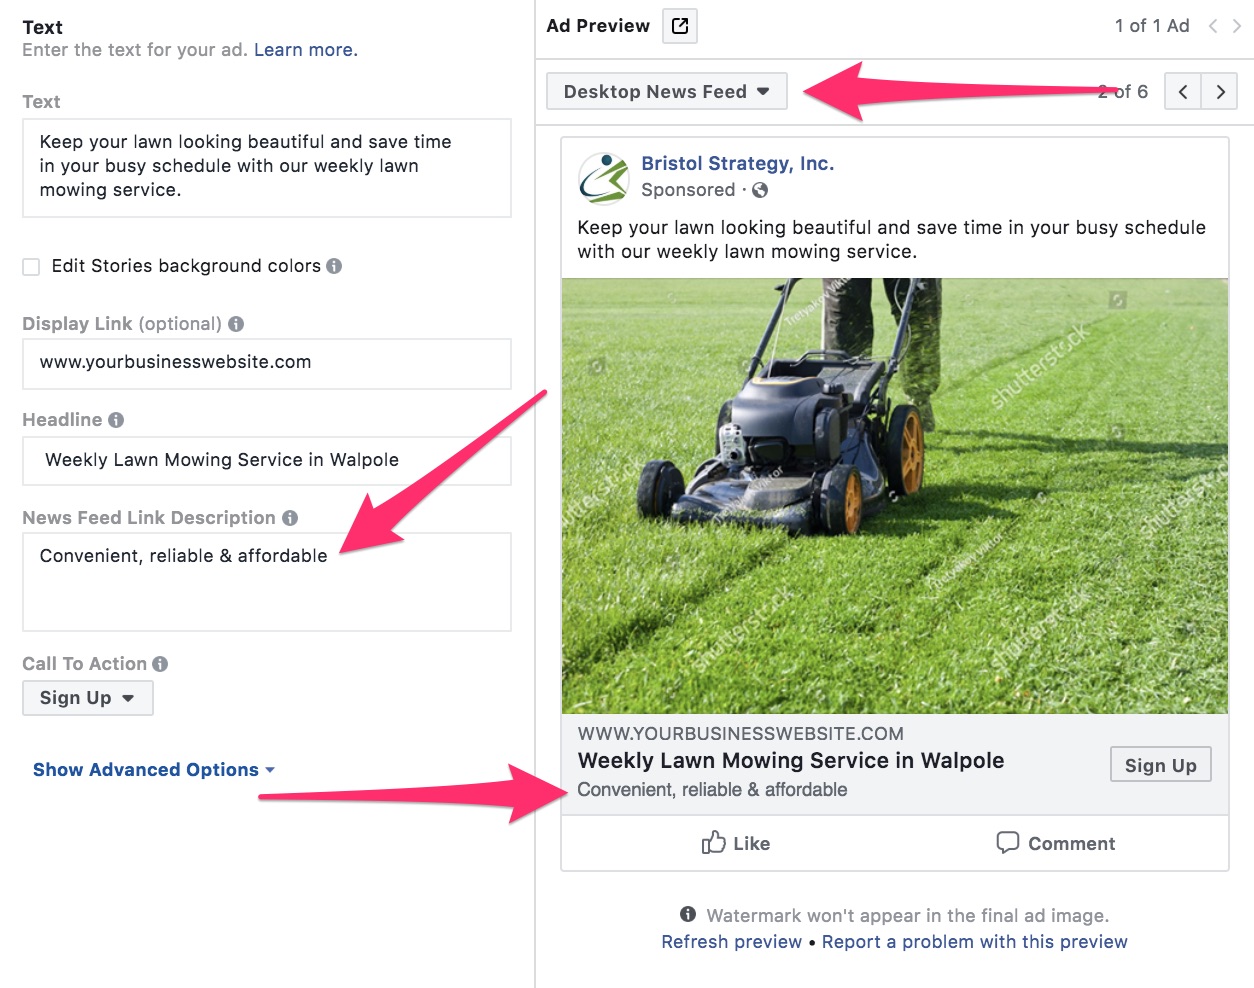 Как рекламировать ландшафтный бизнес с помощью Facebook